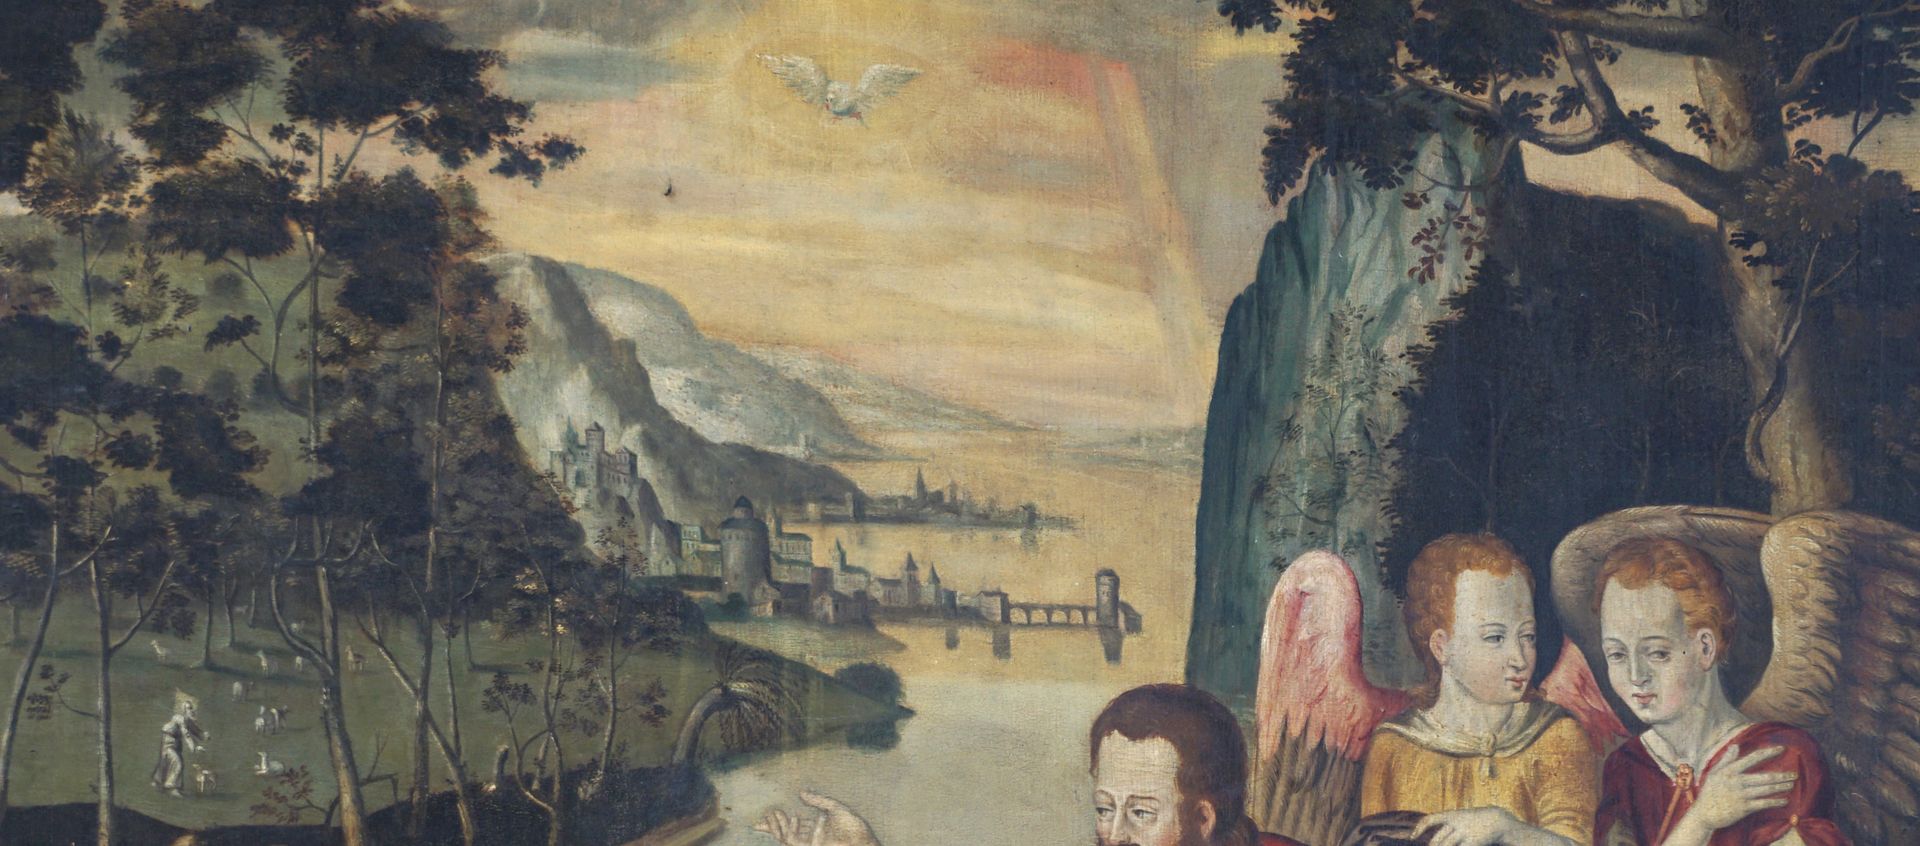 Epitaph Oertel Landschaft im Hintergrund, oben in der Mitte der Heilige Geist